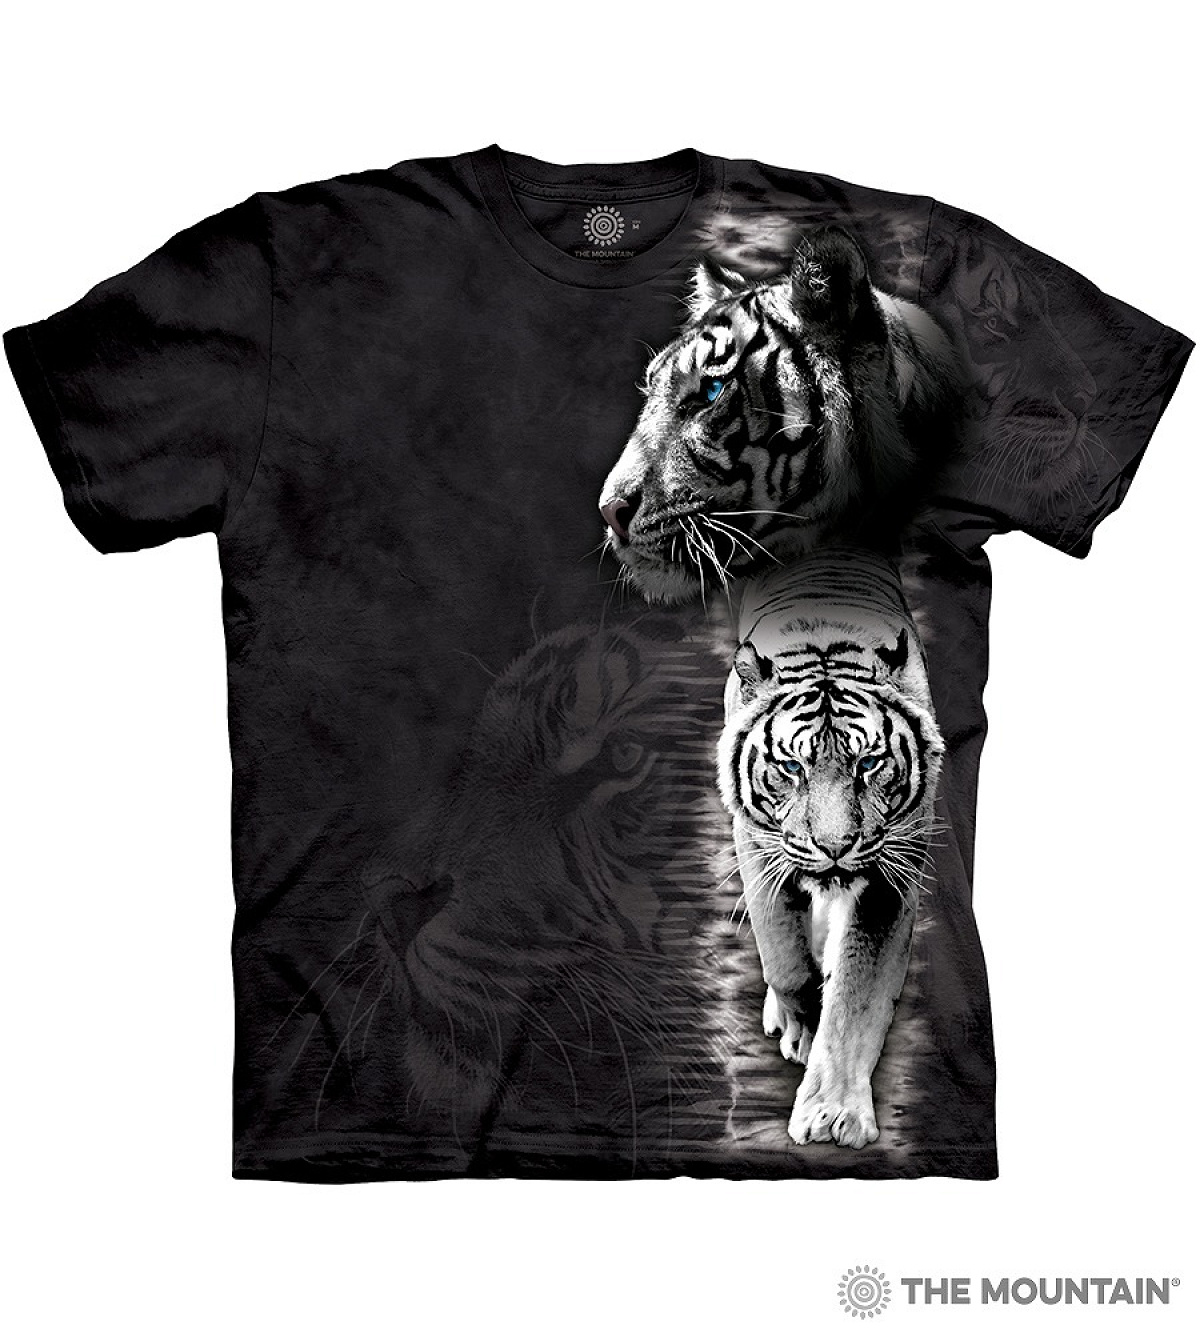 リアルな動物の絵で人気のThe MountainのTシャツ